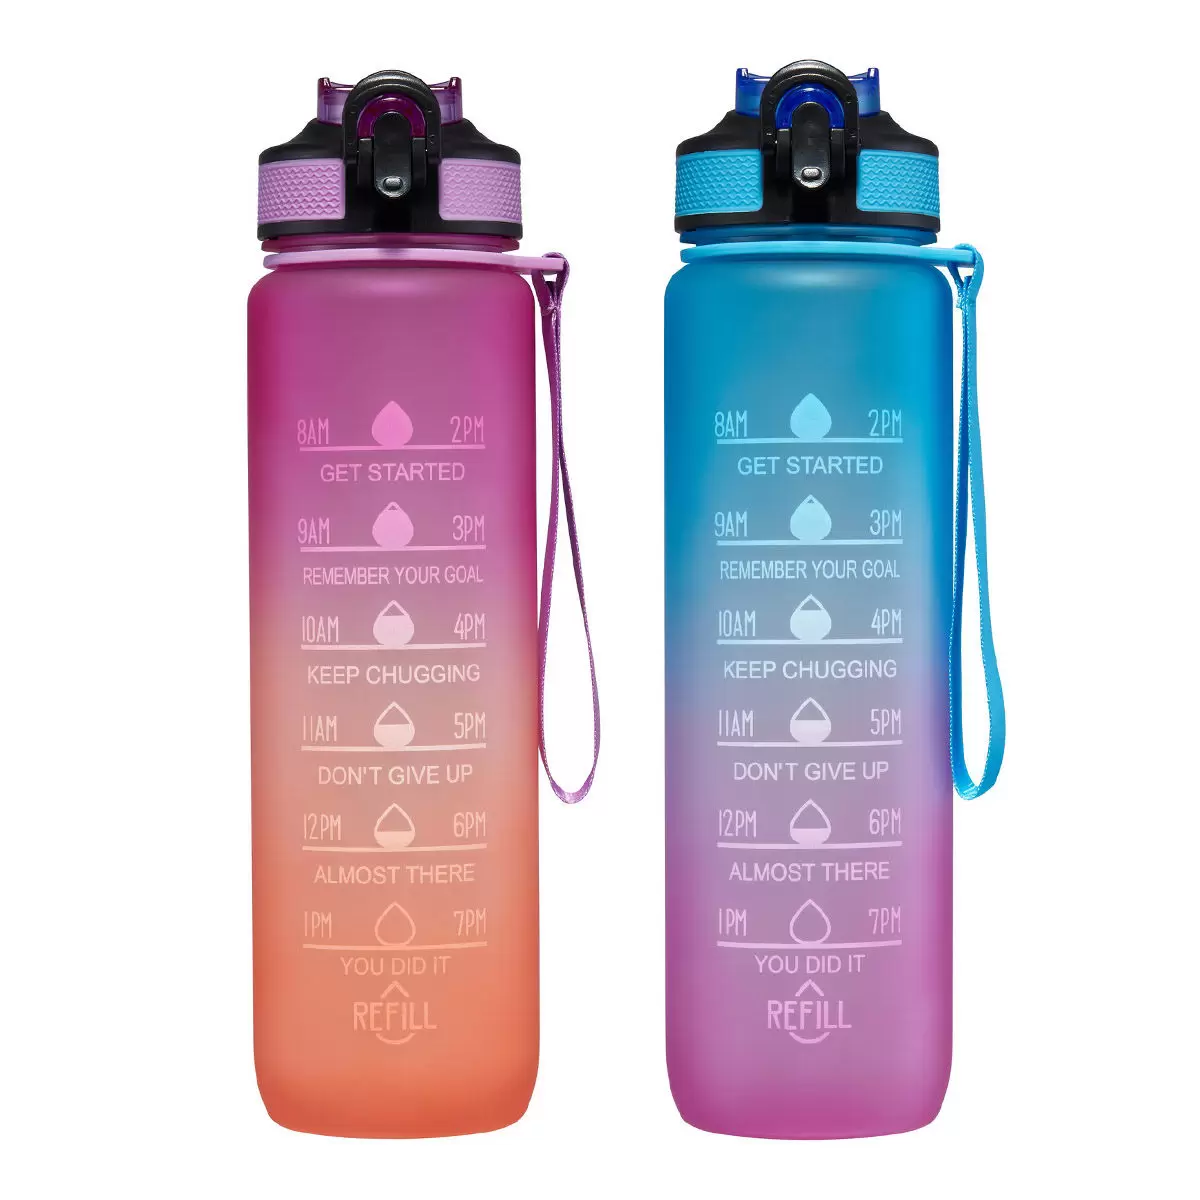 吸管冷水瓶 887毫升 X 2件組 紫色+橘色